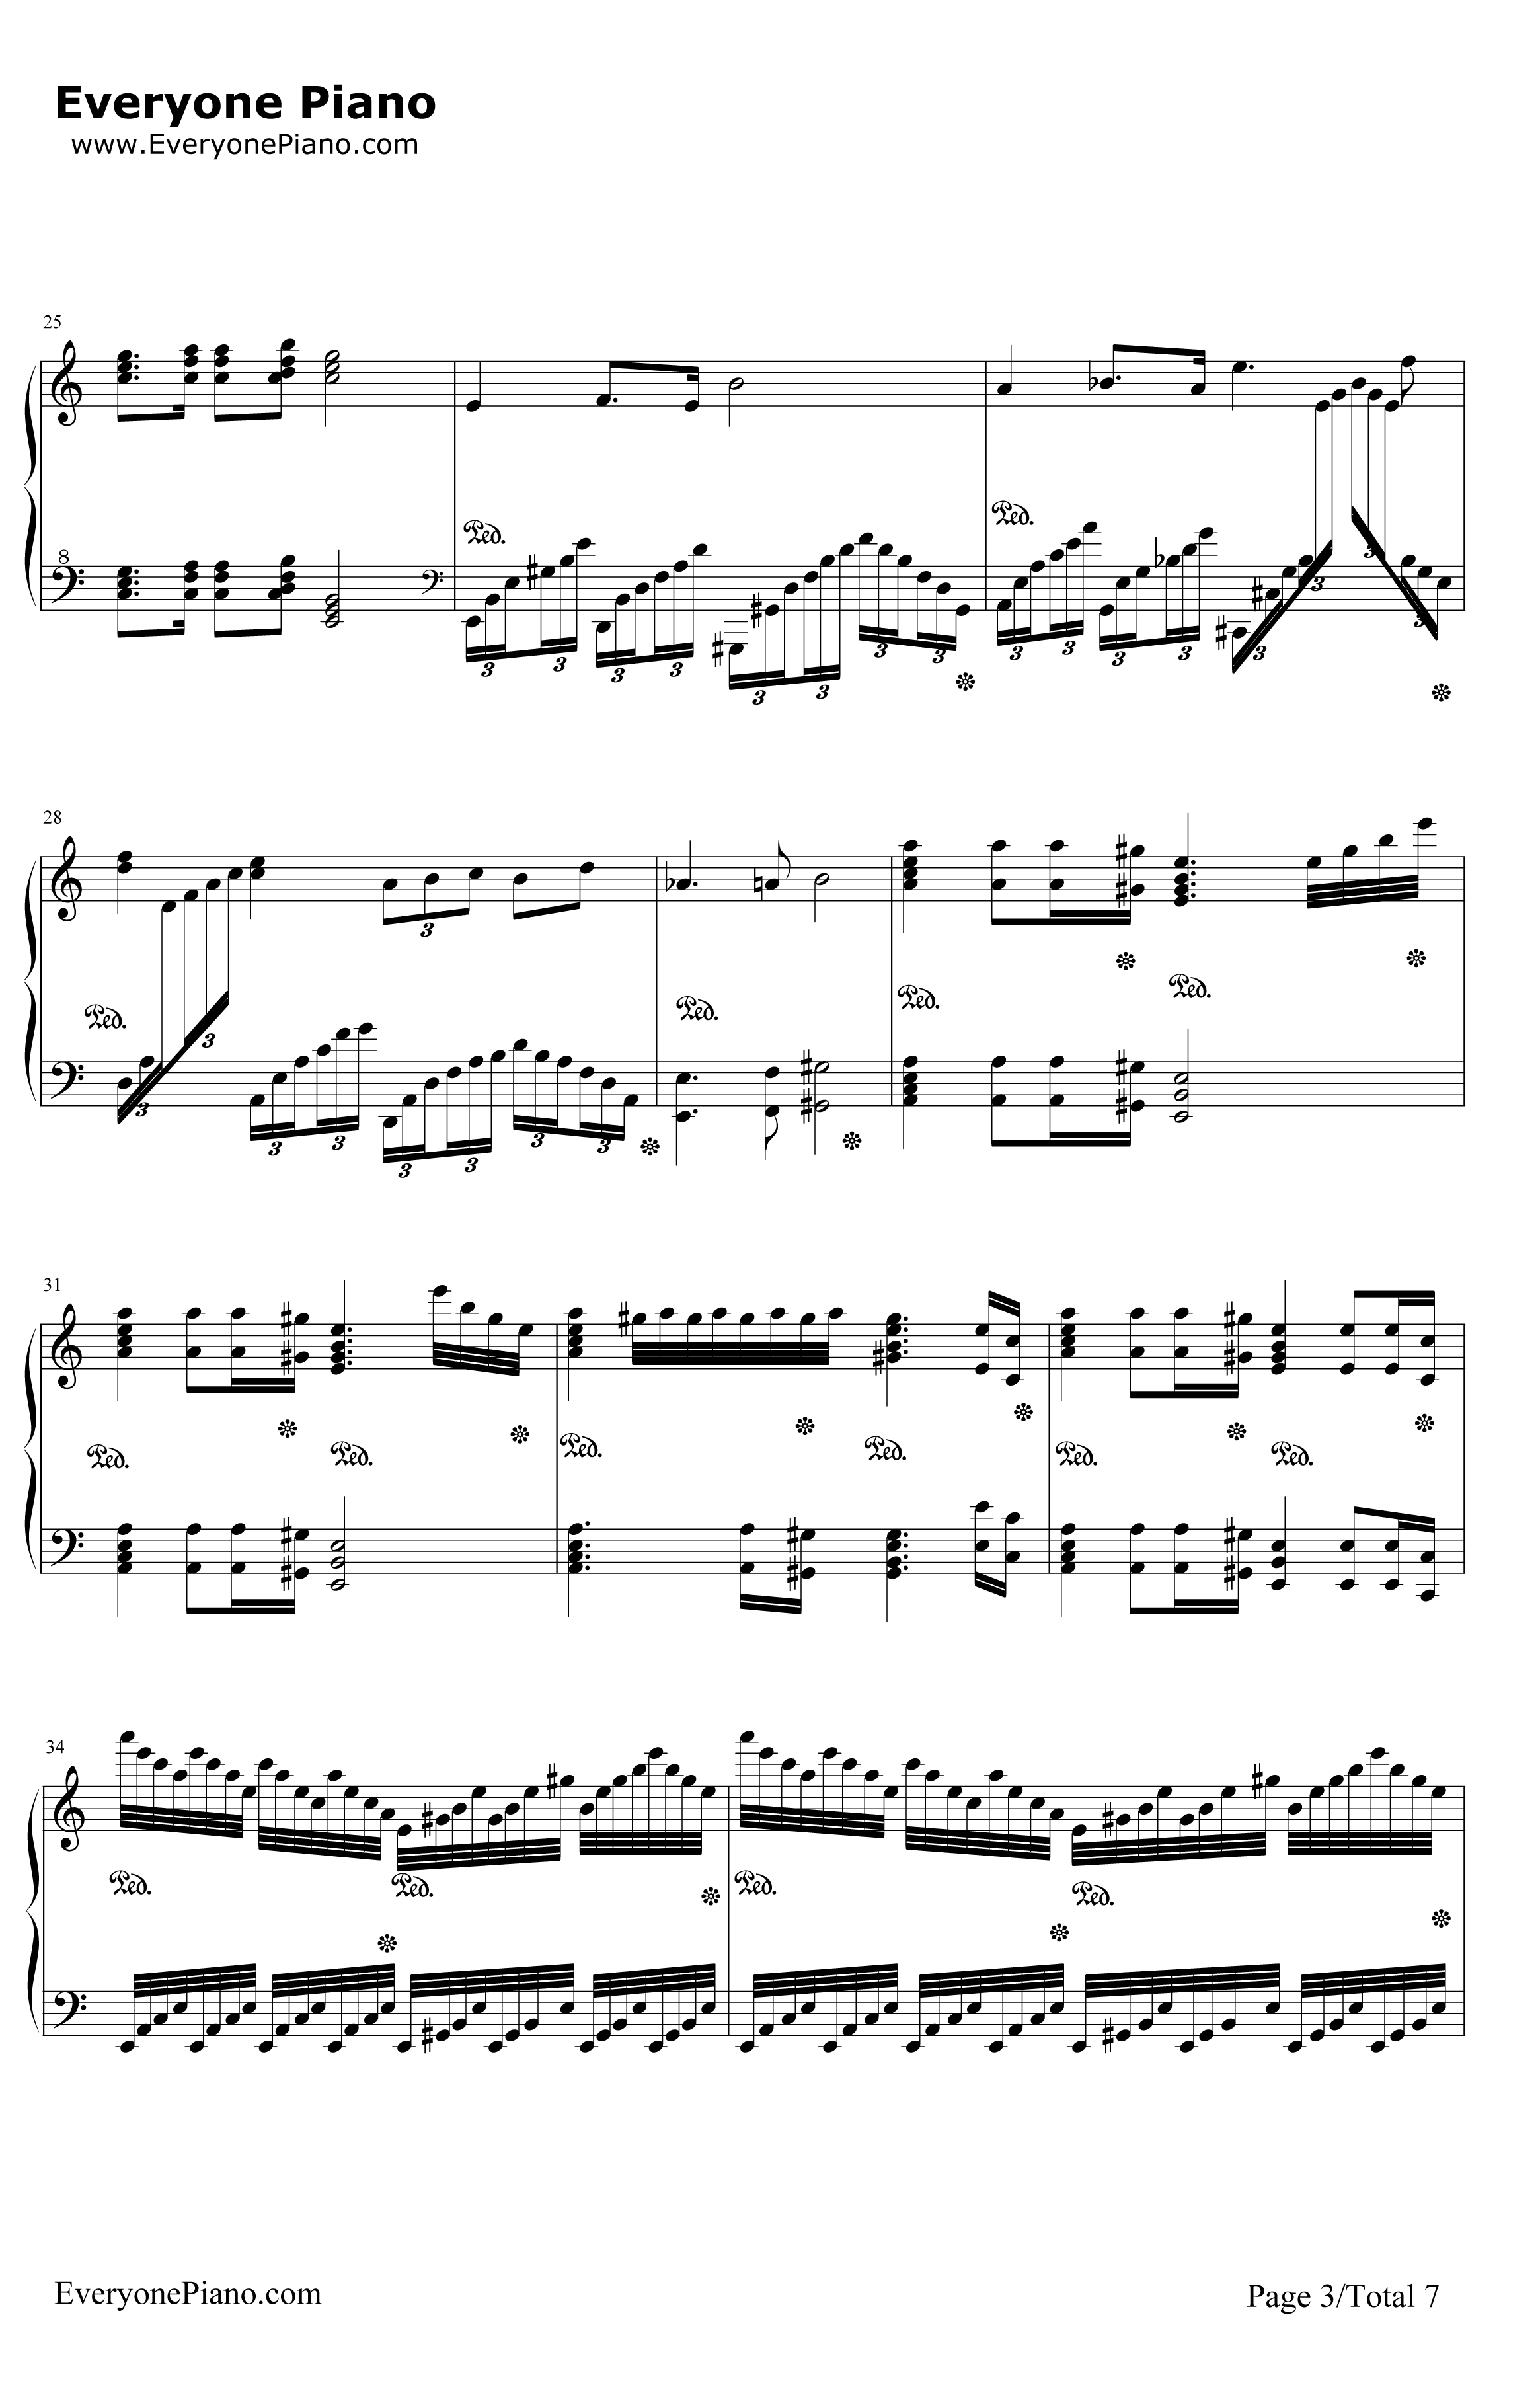 格里格钢琴变奏曲钢琴谱-马克西姆-格里格钢琴变奏曲3